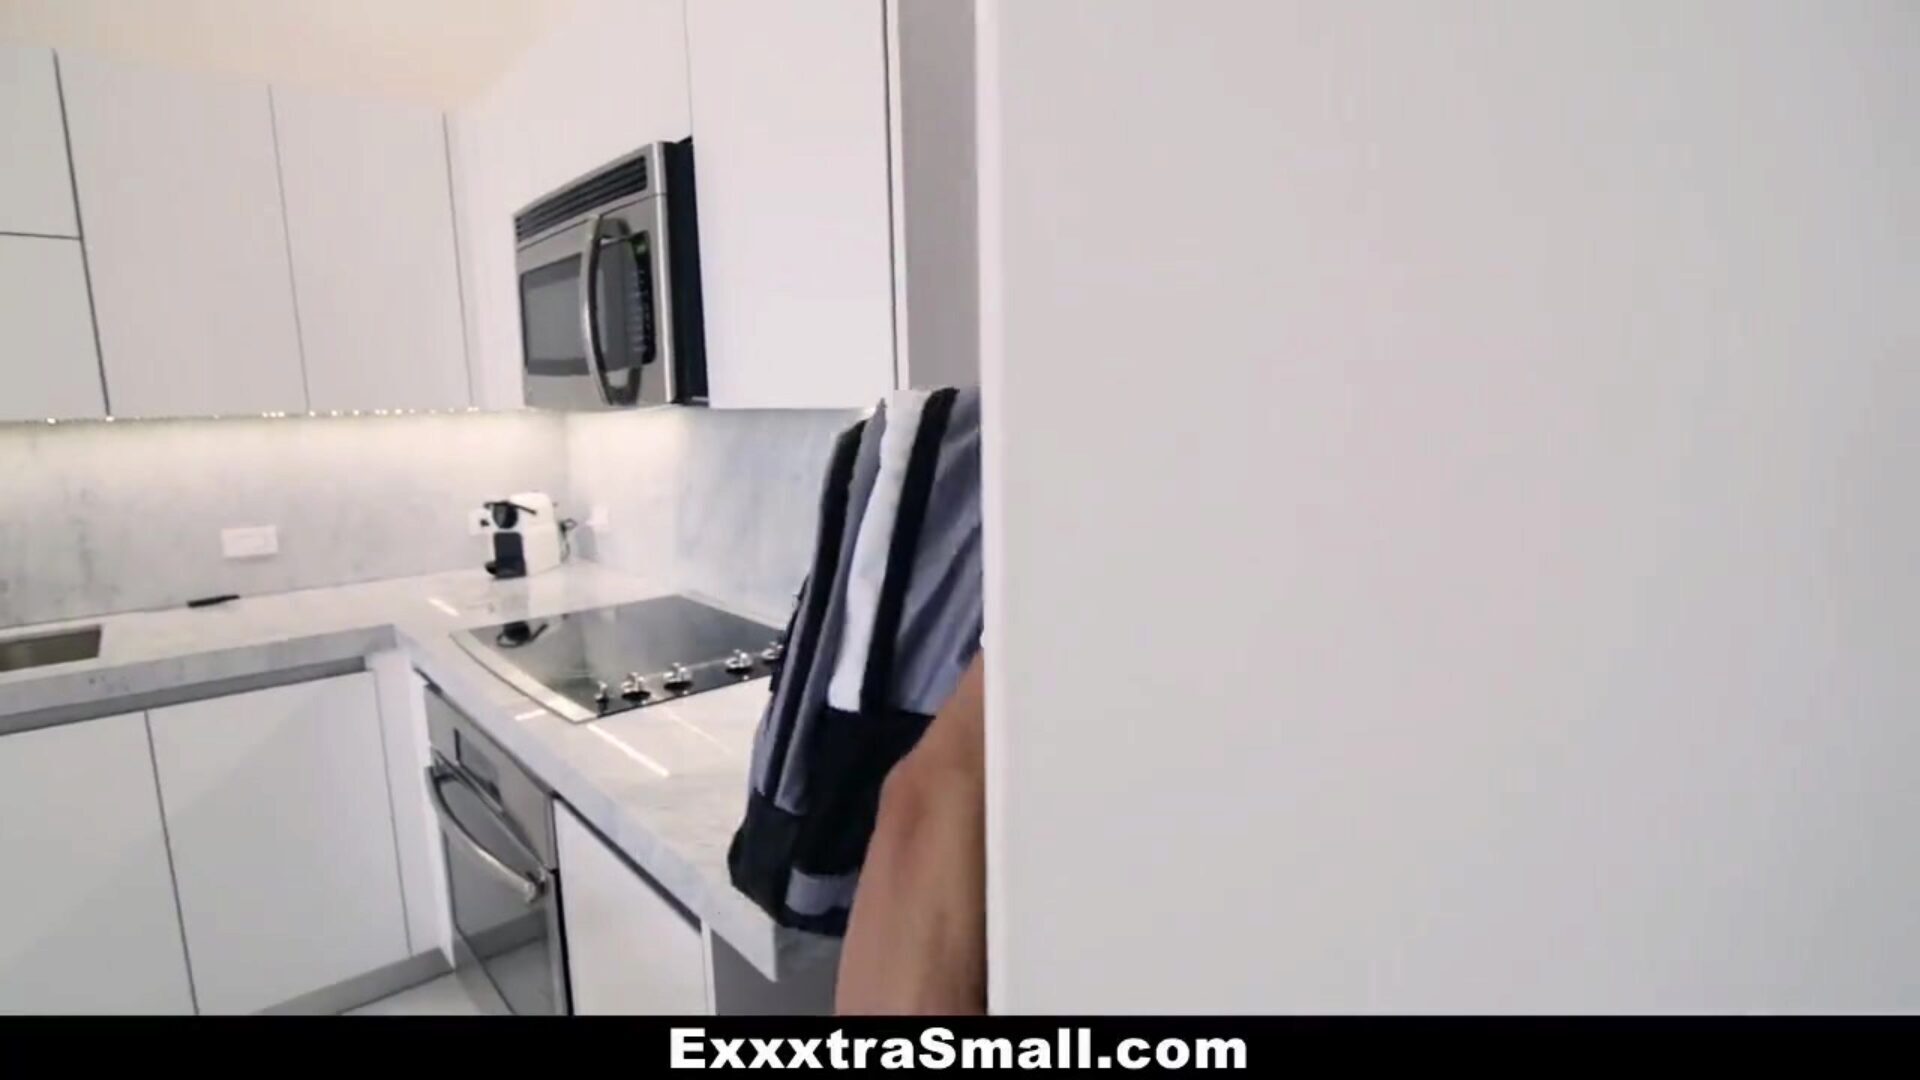 exxxtrasmall - bir pikachu nasıl yakalanır ve becerilir